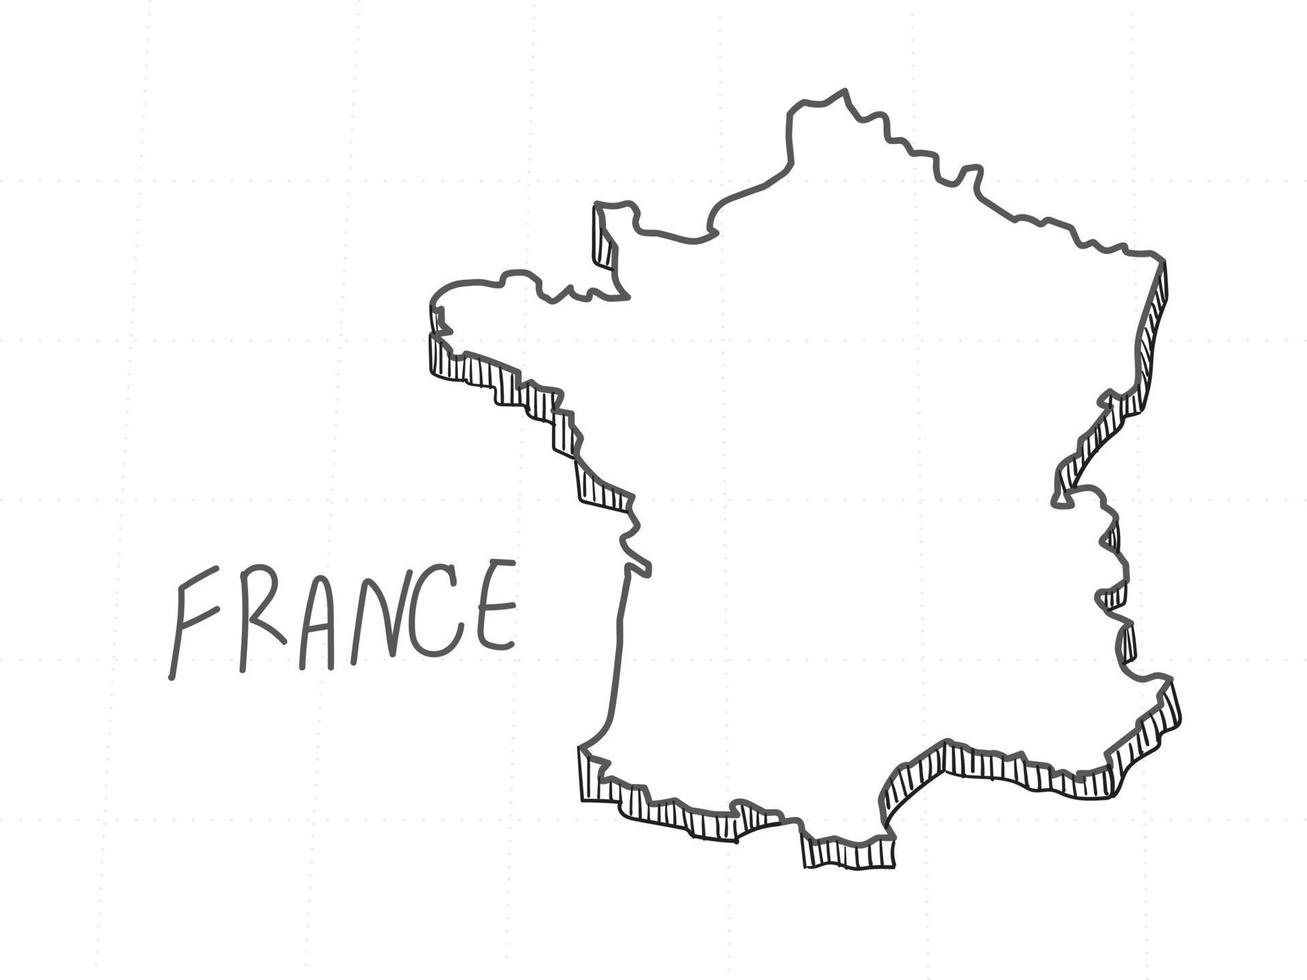 dibujado a mano del mapa 3d de francia sobre fondo blanco. vector